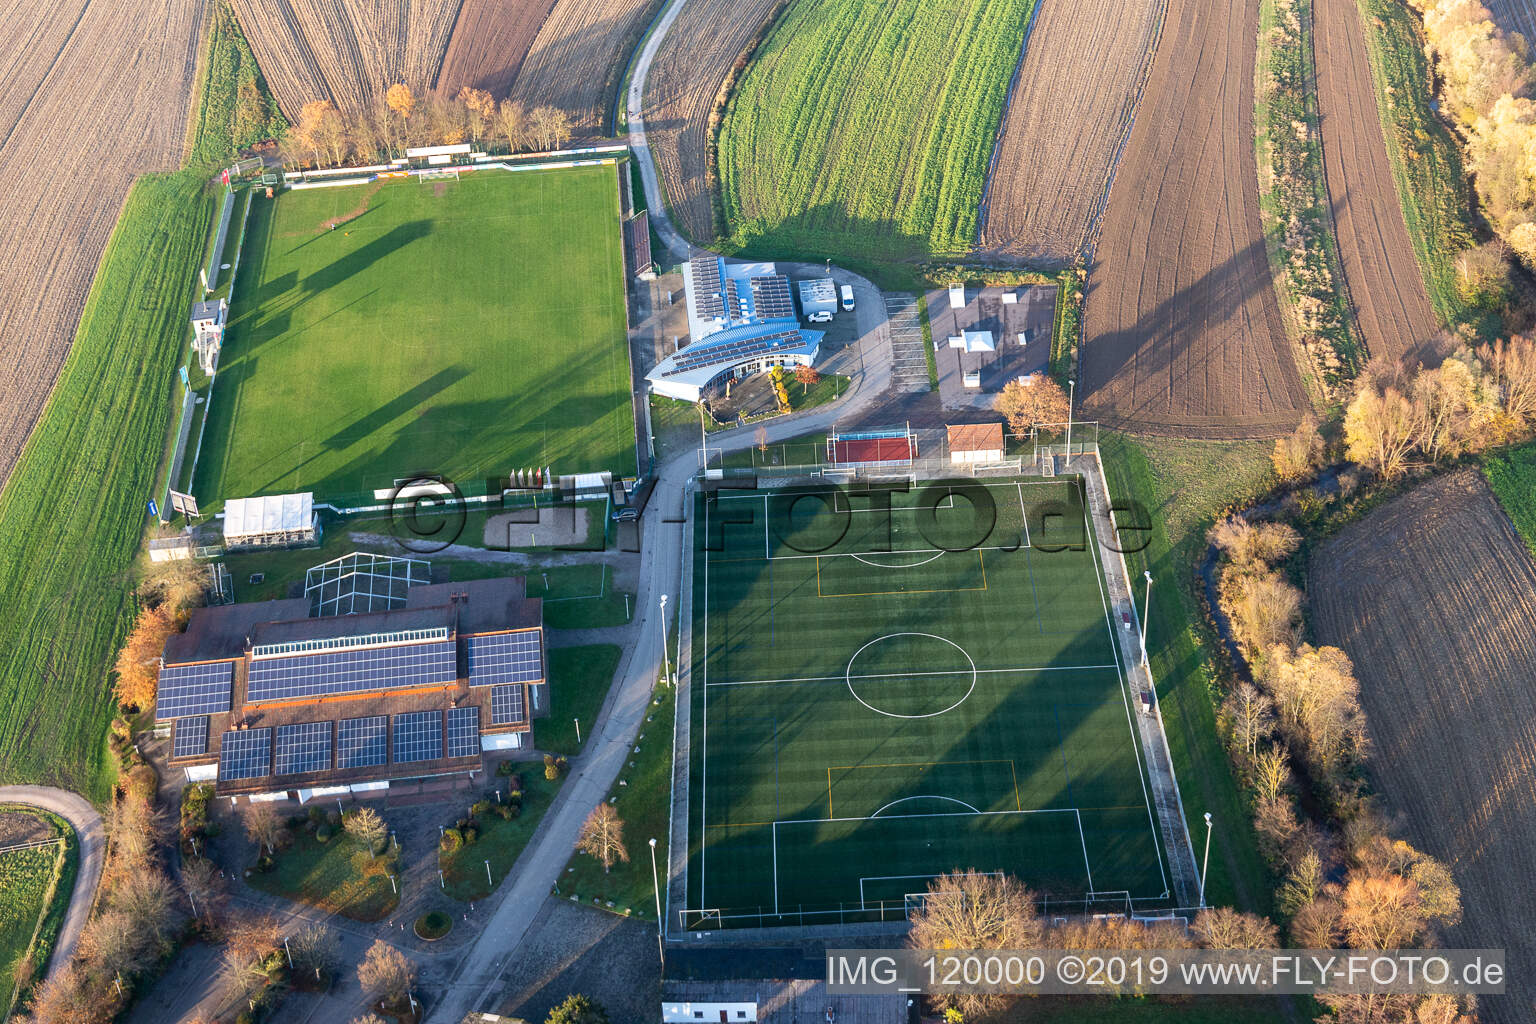 Vue aérienne de Club sportif Sand, Sander Hall à Sand dans le département Bade-Wurtemberg, Allemagne